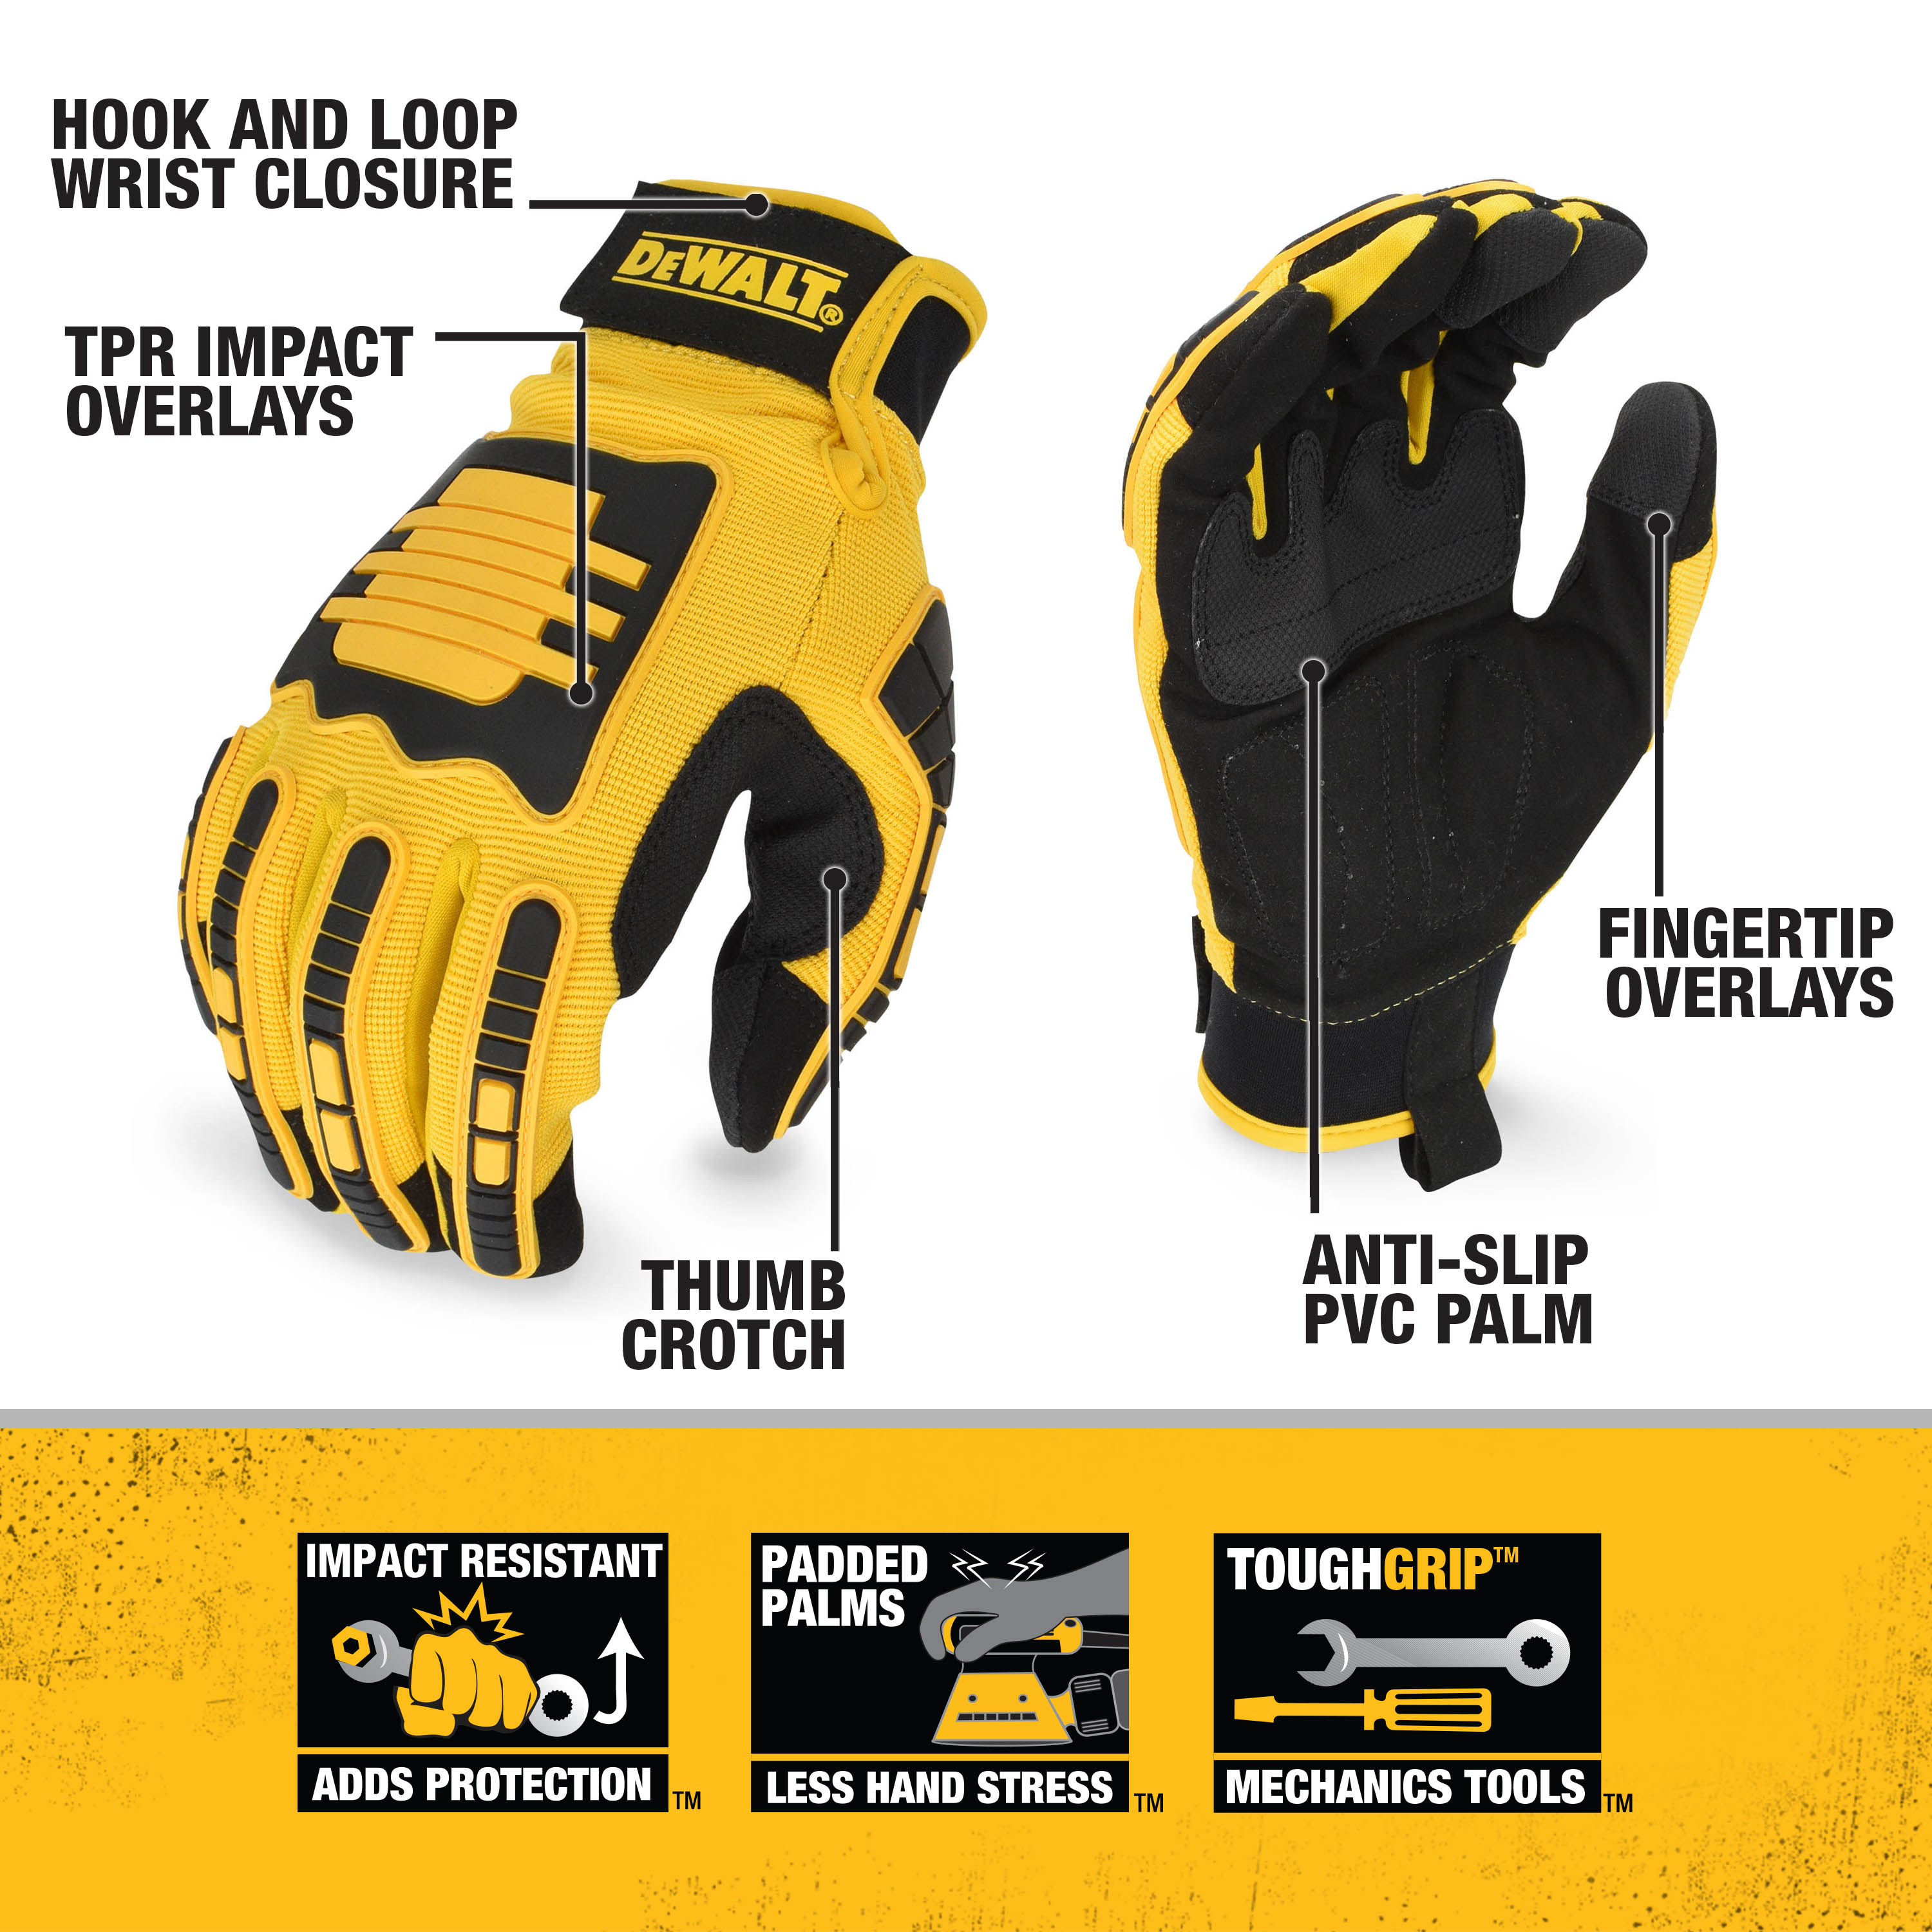 3 Fingers, Size L Black Reinforced Dewalt dpg214l Protection Gloves 